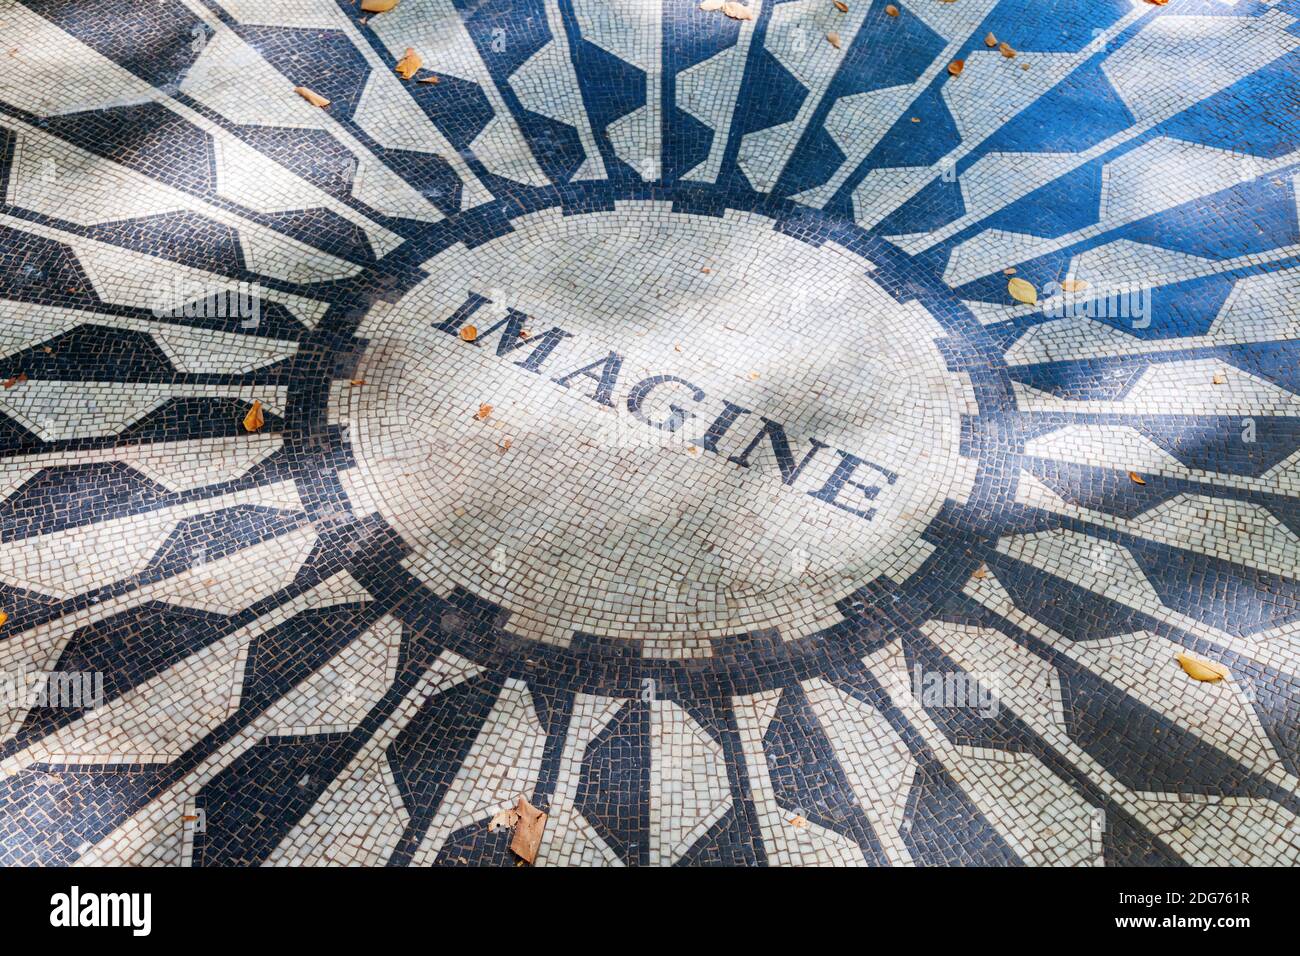 John Lennon - Imaginez la mosaïque du Strawberry Fields Memorial à Central Park, New York Banque D'Images